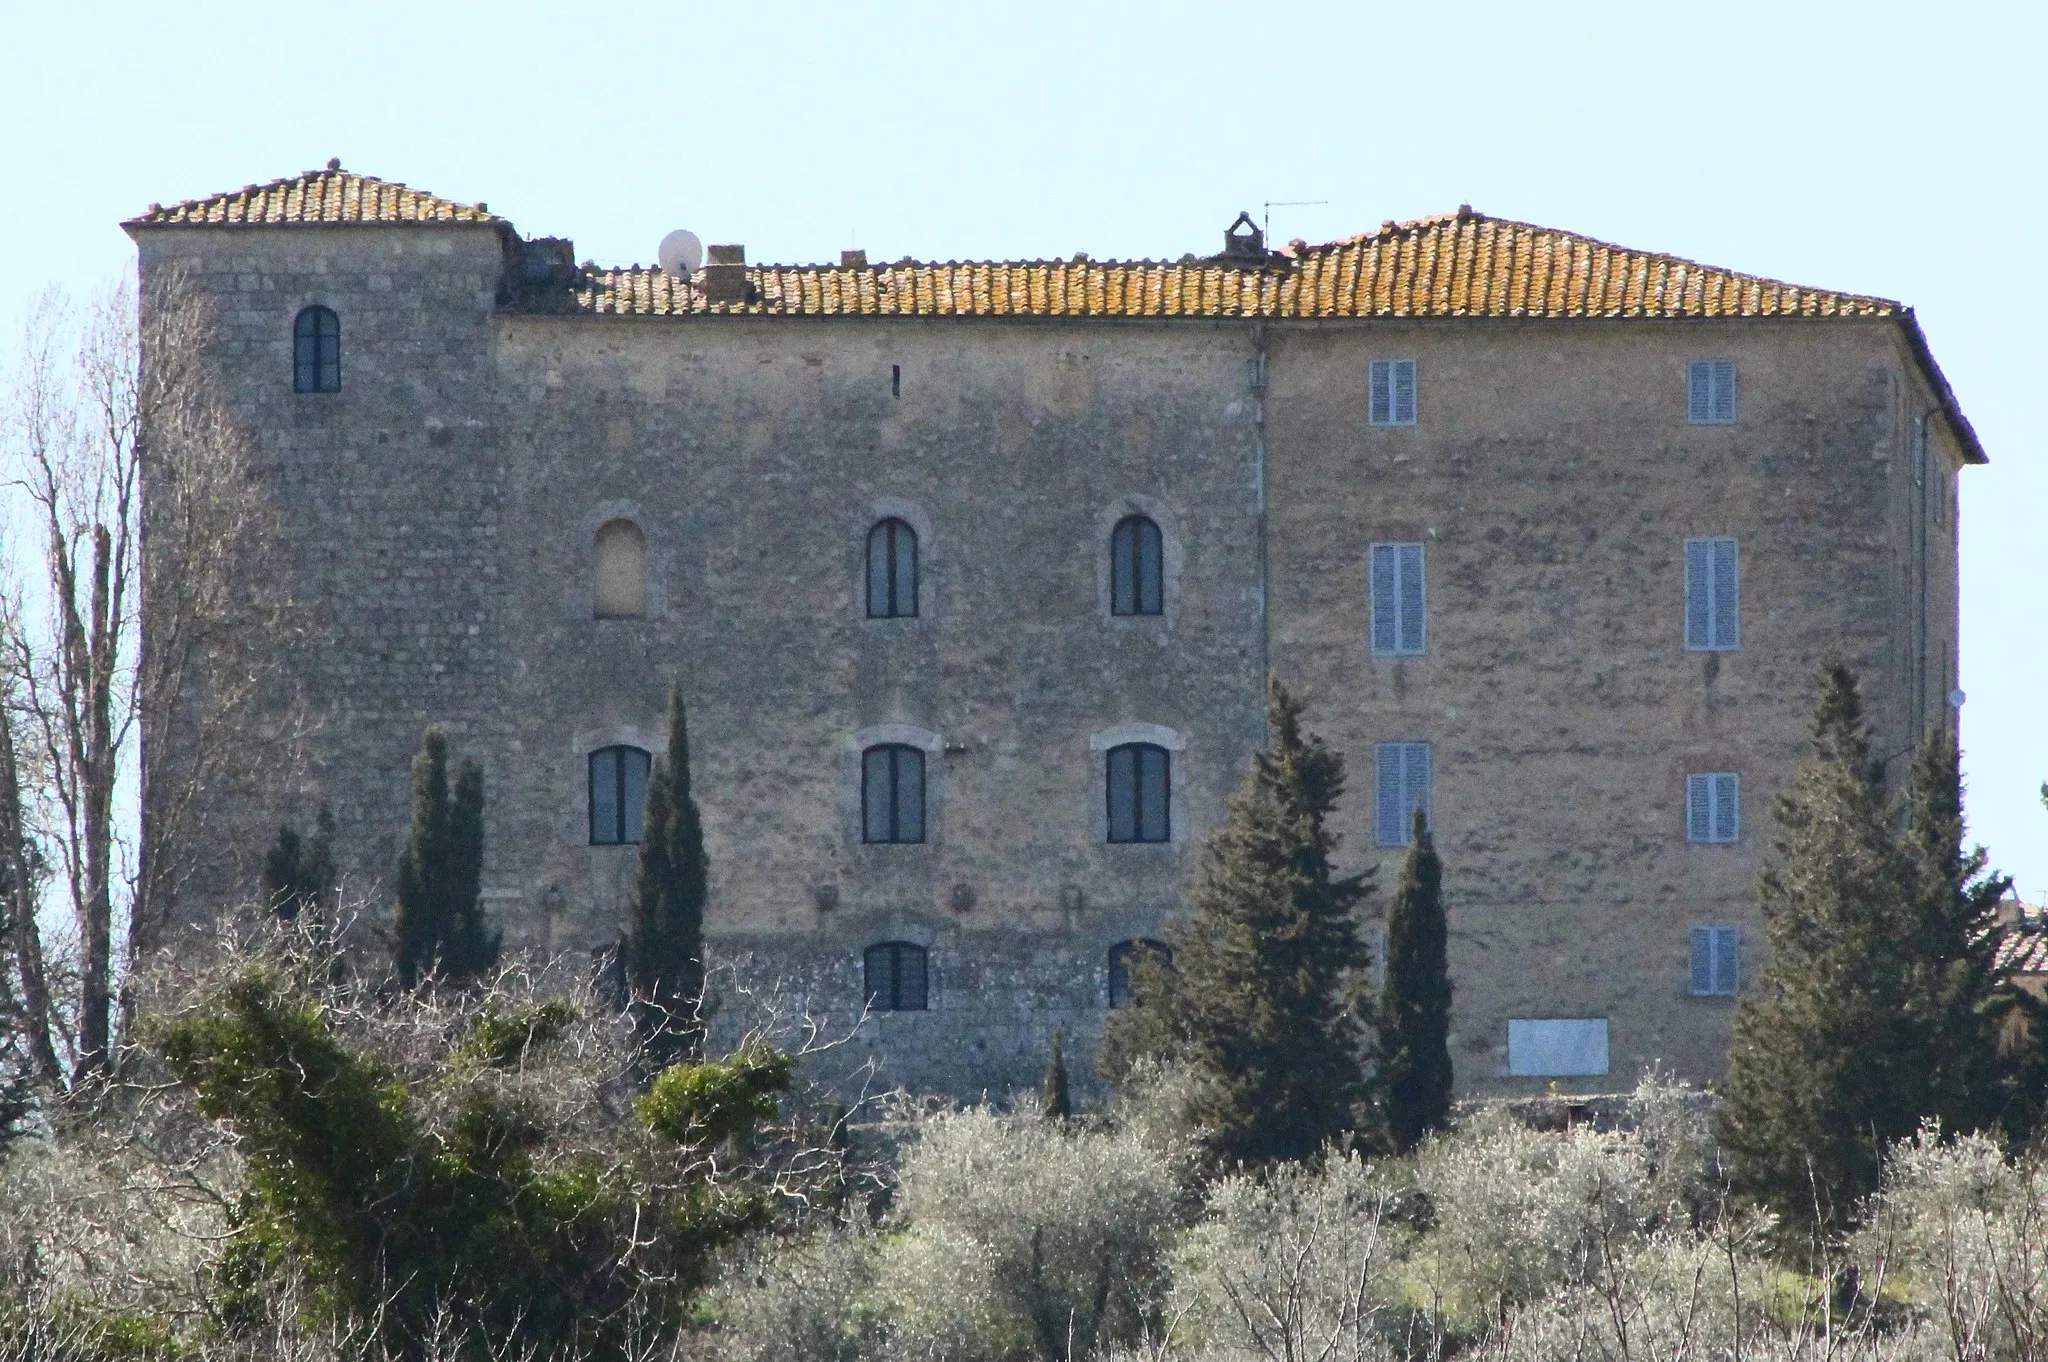 Photo showing: Castle Castello di Grotti, Ville di Corsano, hamlet of Monteroni d'Arbia, Province of Siena, Tuscany, Italy